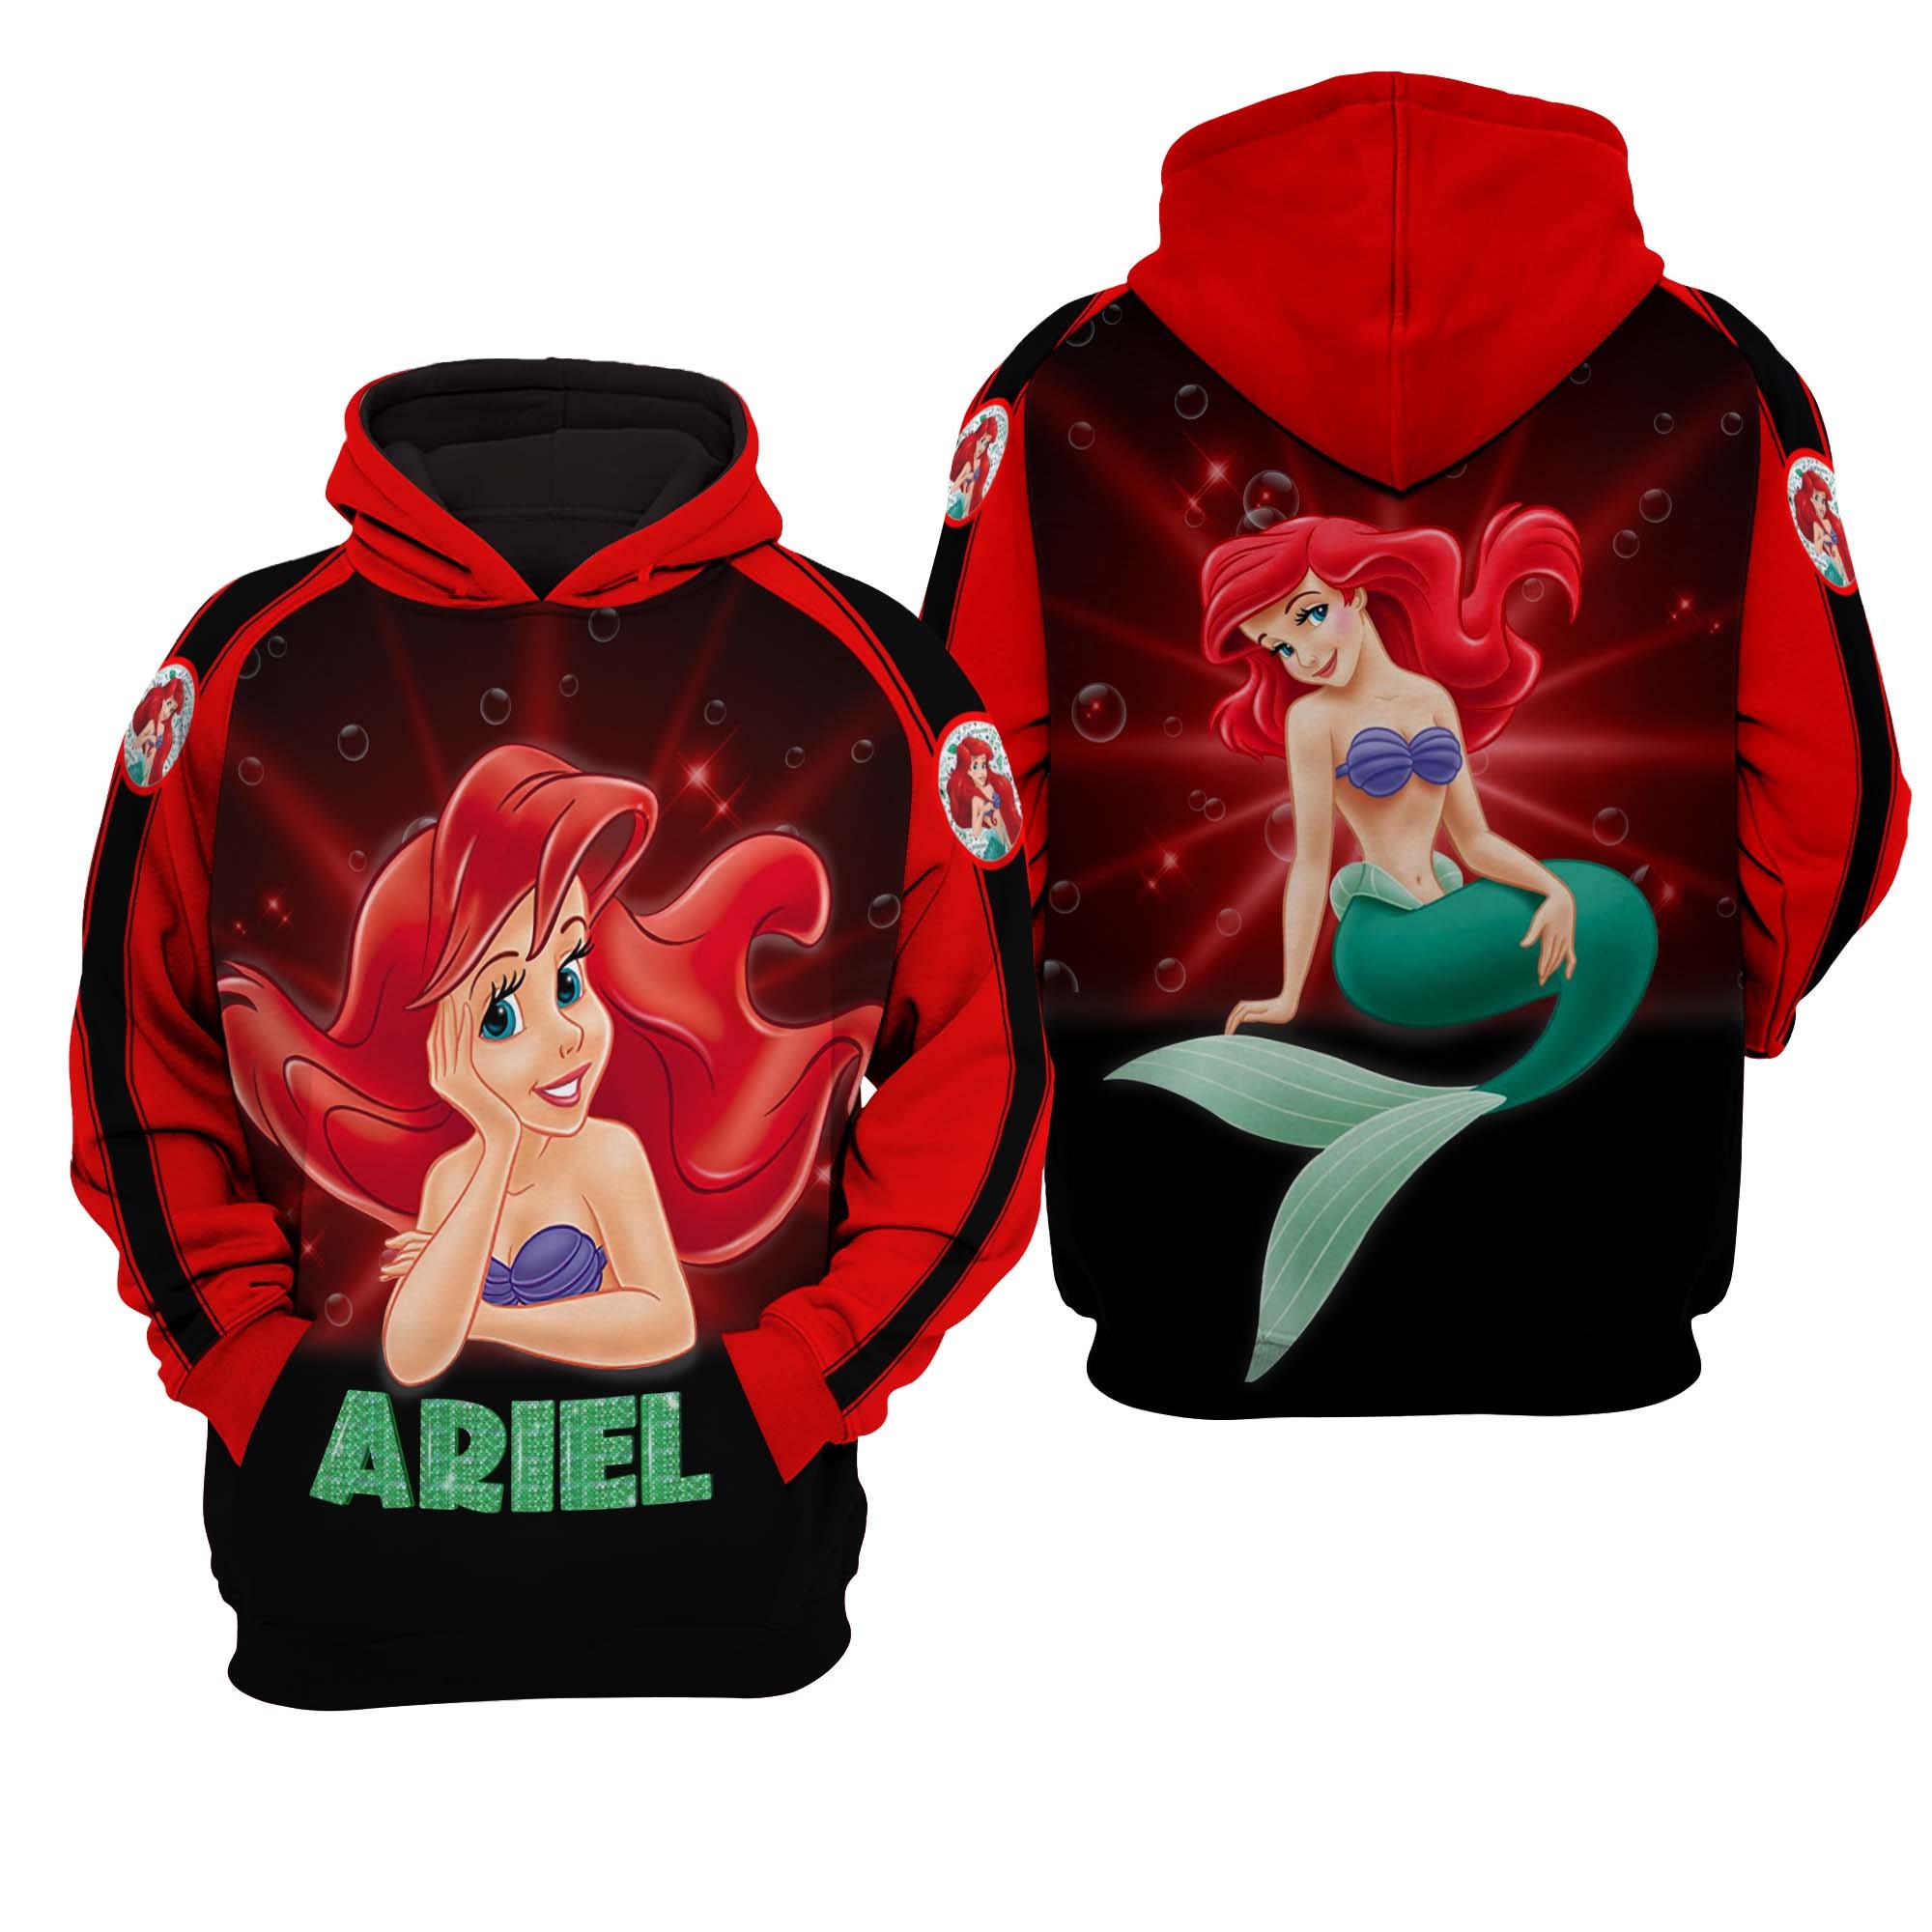 Ariel The Little Mermaid Disney AOP Unisex Hoodie